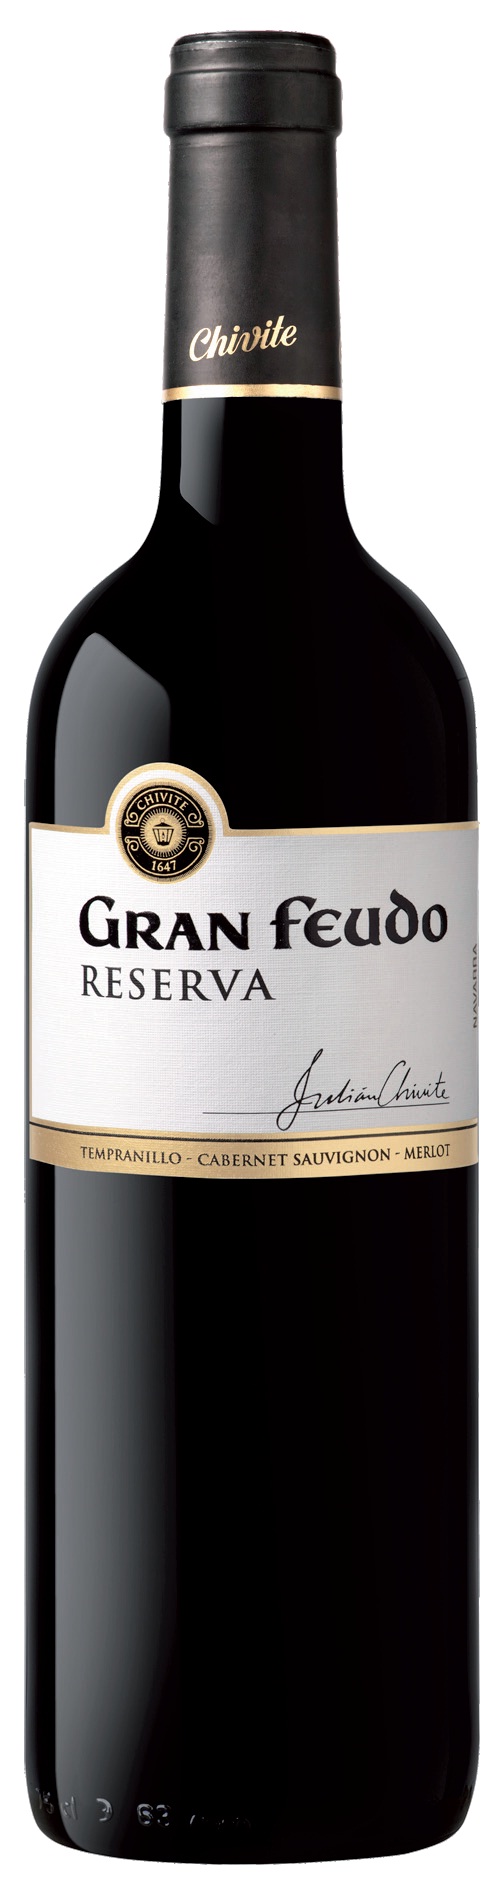 Image of Wine bottle Gran Feudo Viñas Viejas Reserva